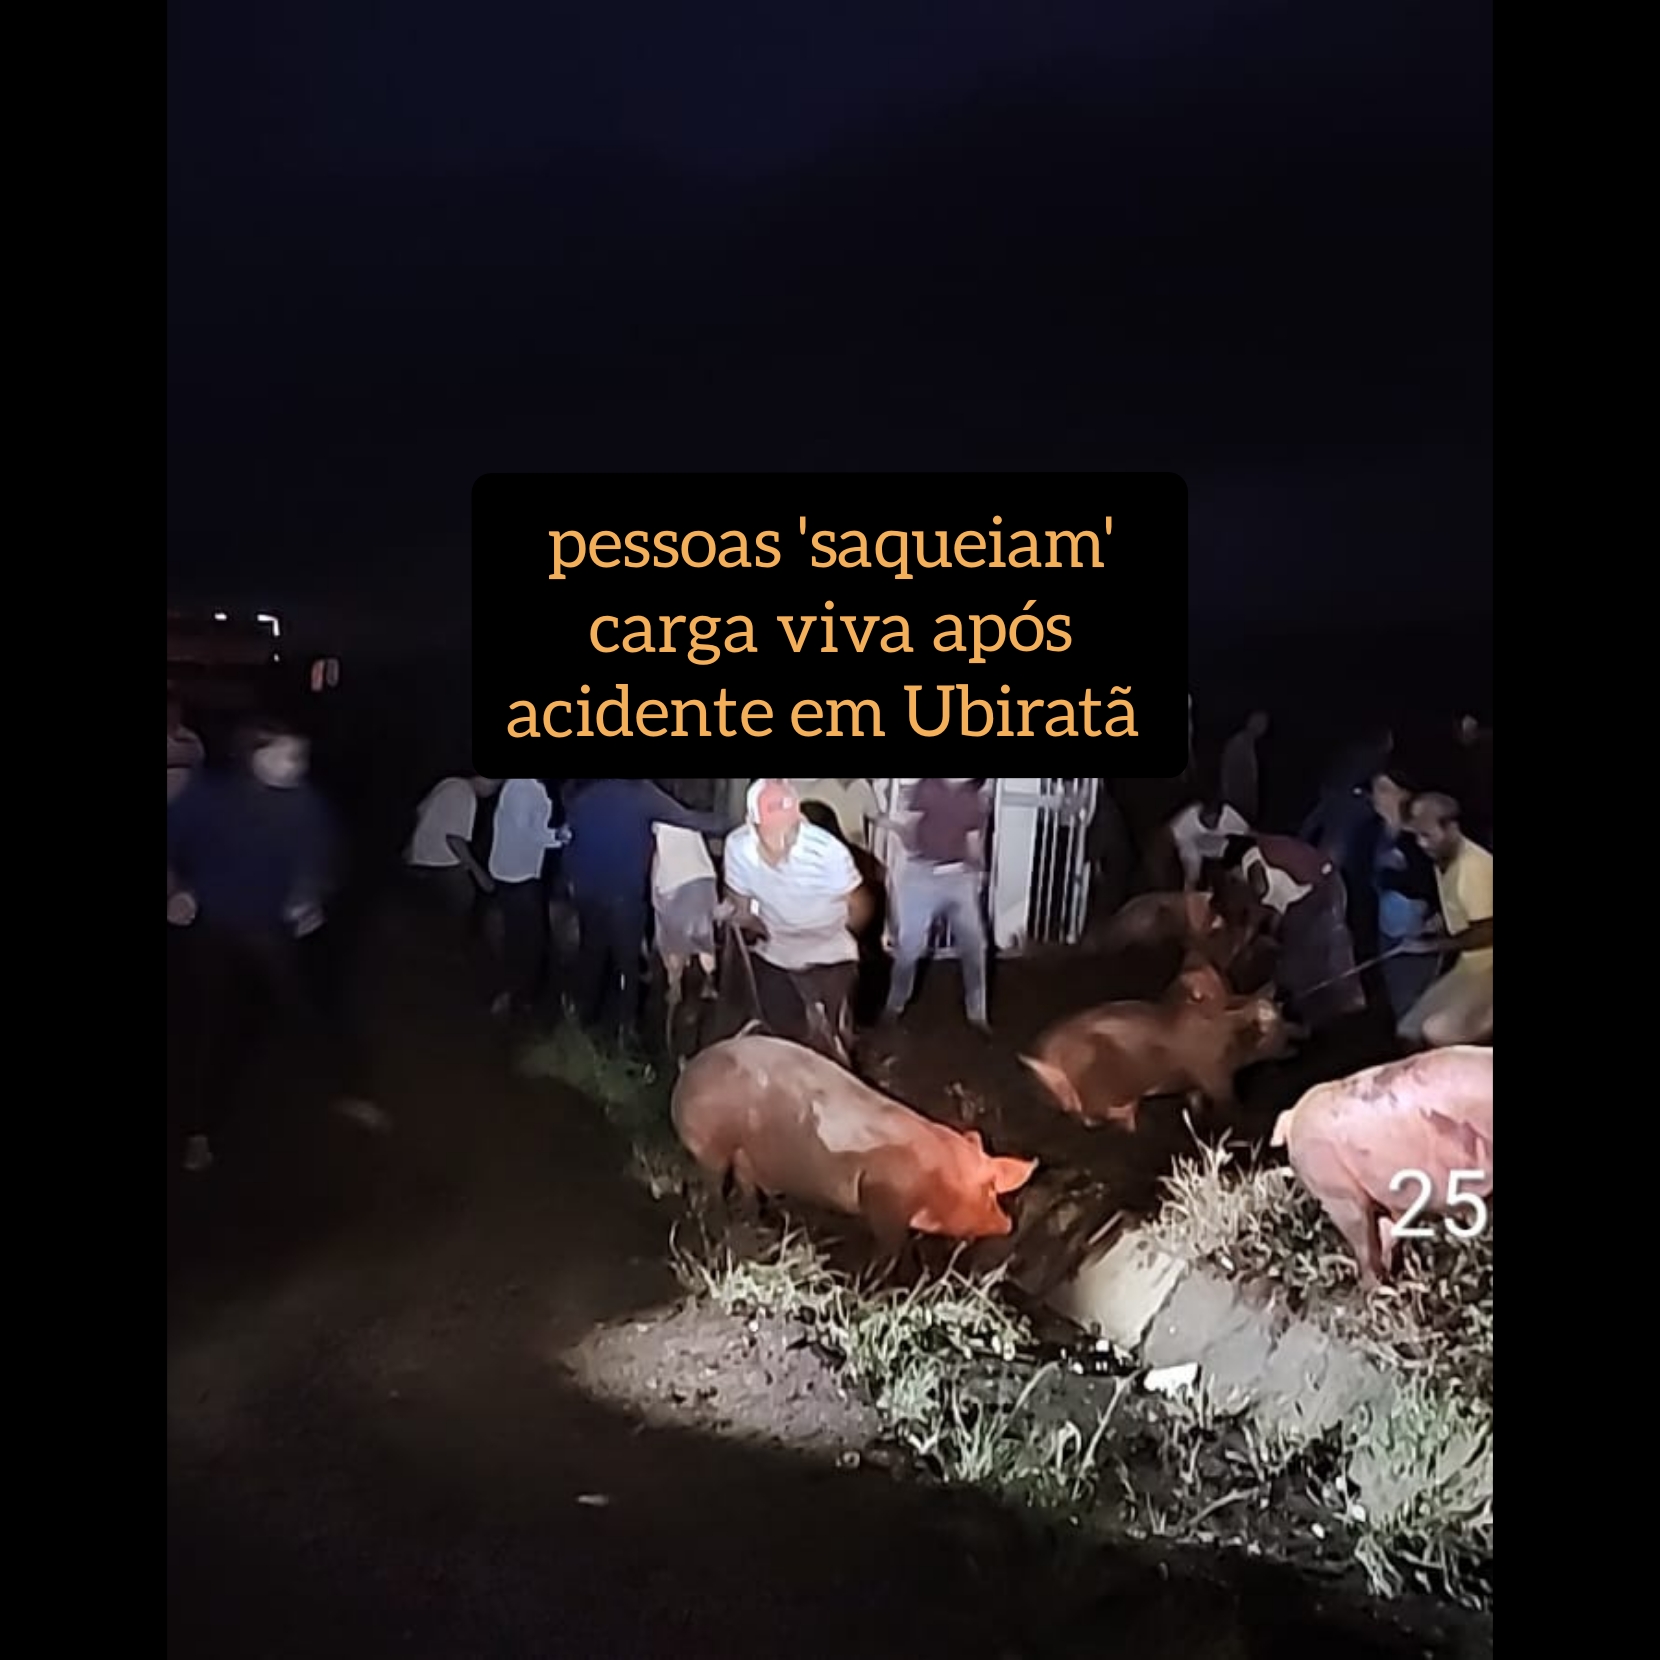 Após acidente envolvendo carreta que transportava porcos, carga viva é “saqueada” em Ubiratã